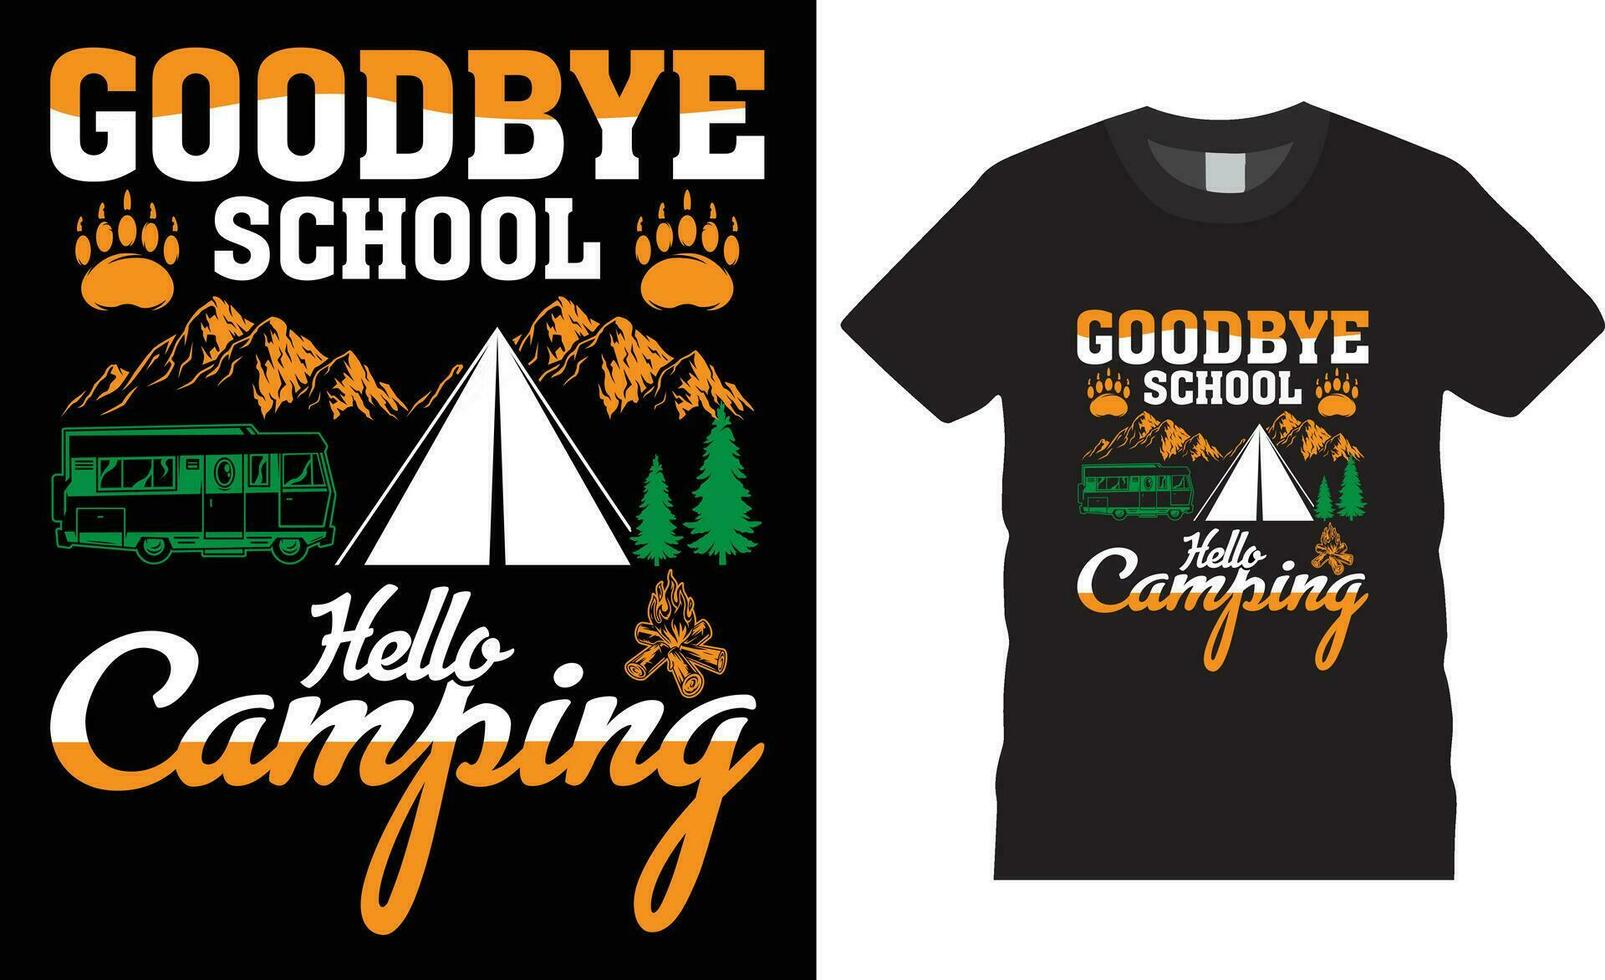 Neu Camping Typografie T-Shirt Design heute Prognose meistens Camping Design Vektor retro drucken Vorlage.Auf Wiedersehen Schule Hallo Camping